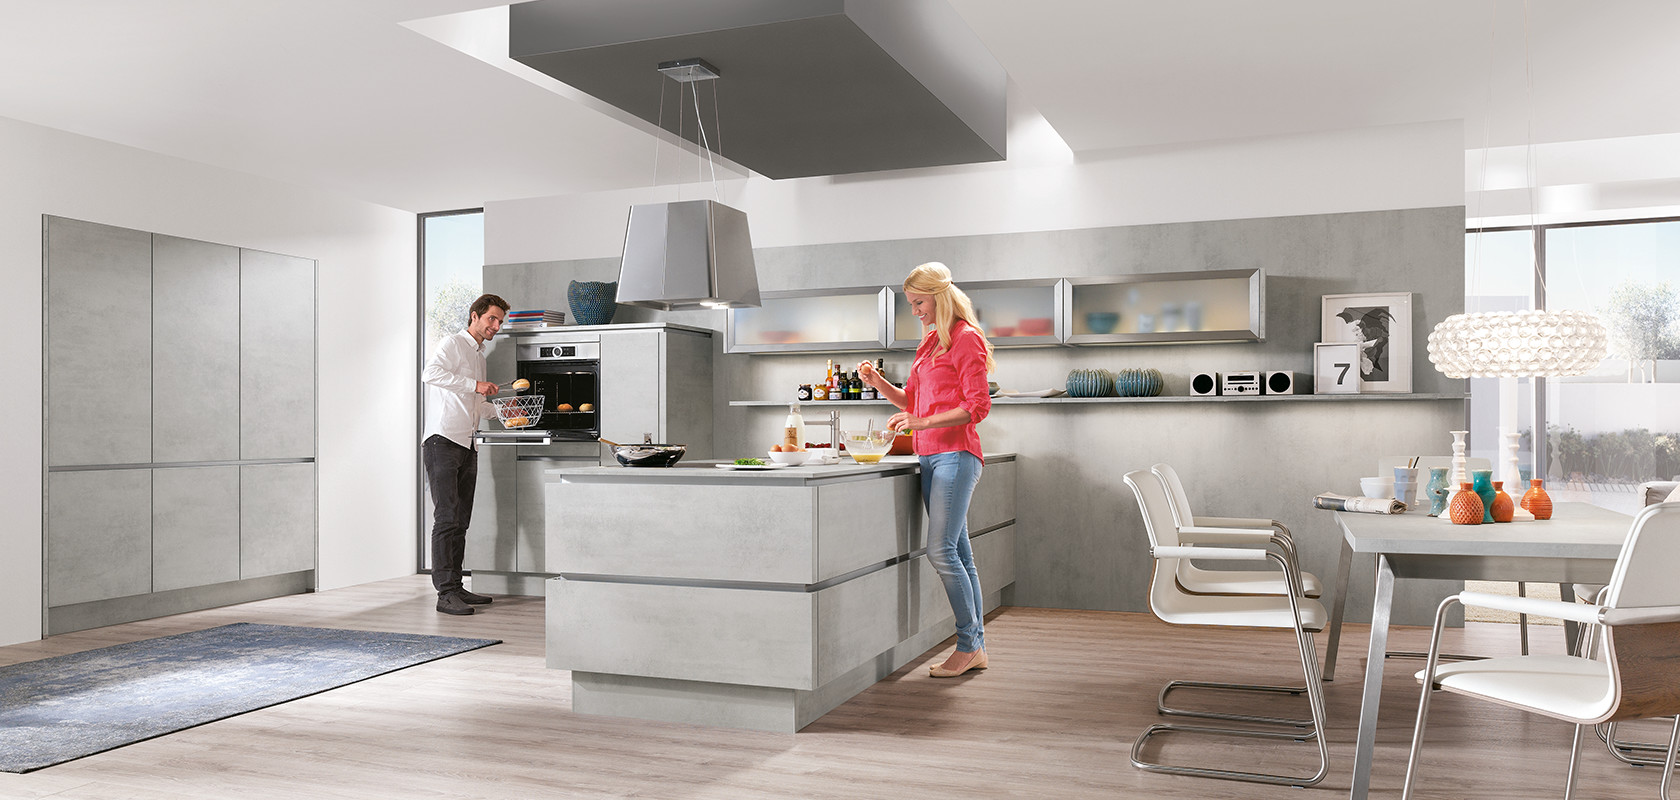 Un diseño de cocina moderna con dos personas cocinando, que cuenta con gabinetes elegantes, electrodomésticos de acero inoxidable y un diseño luminoso y espacioso.